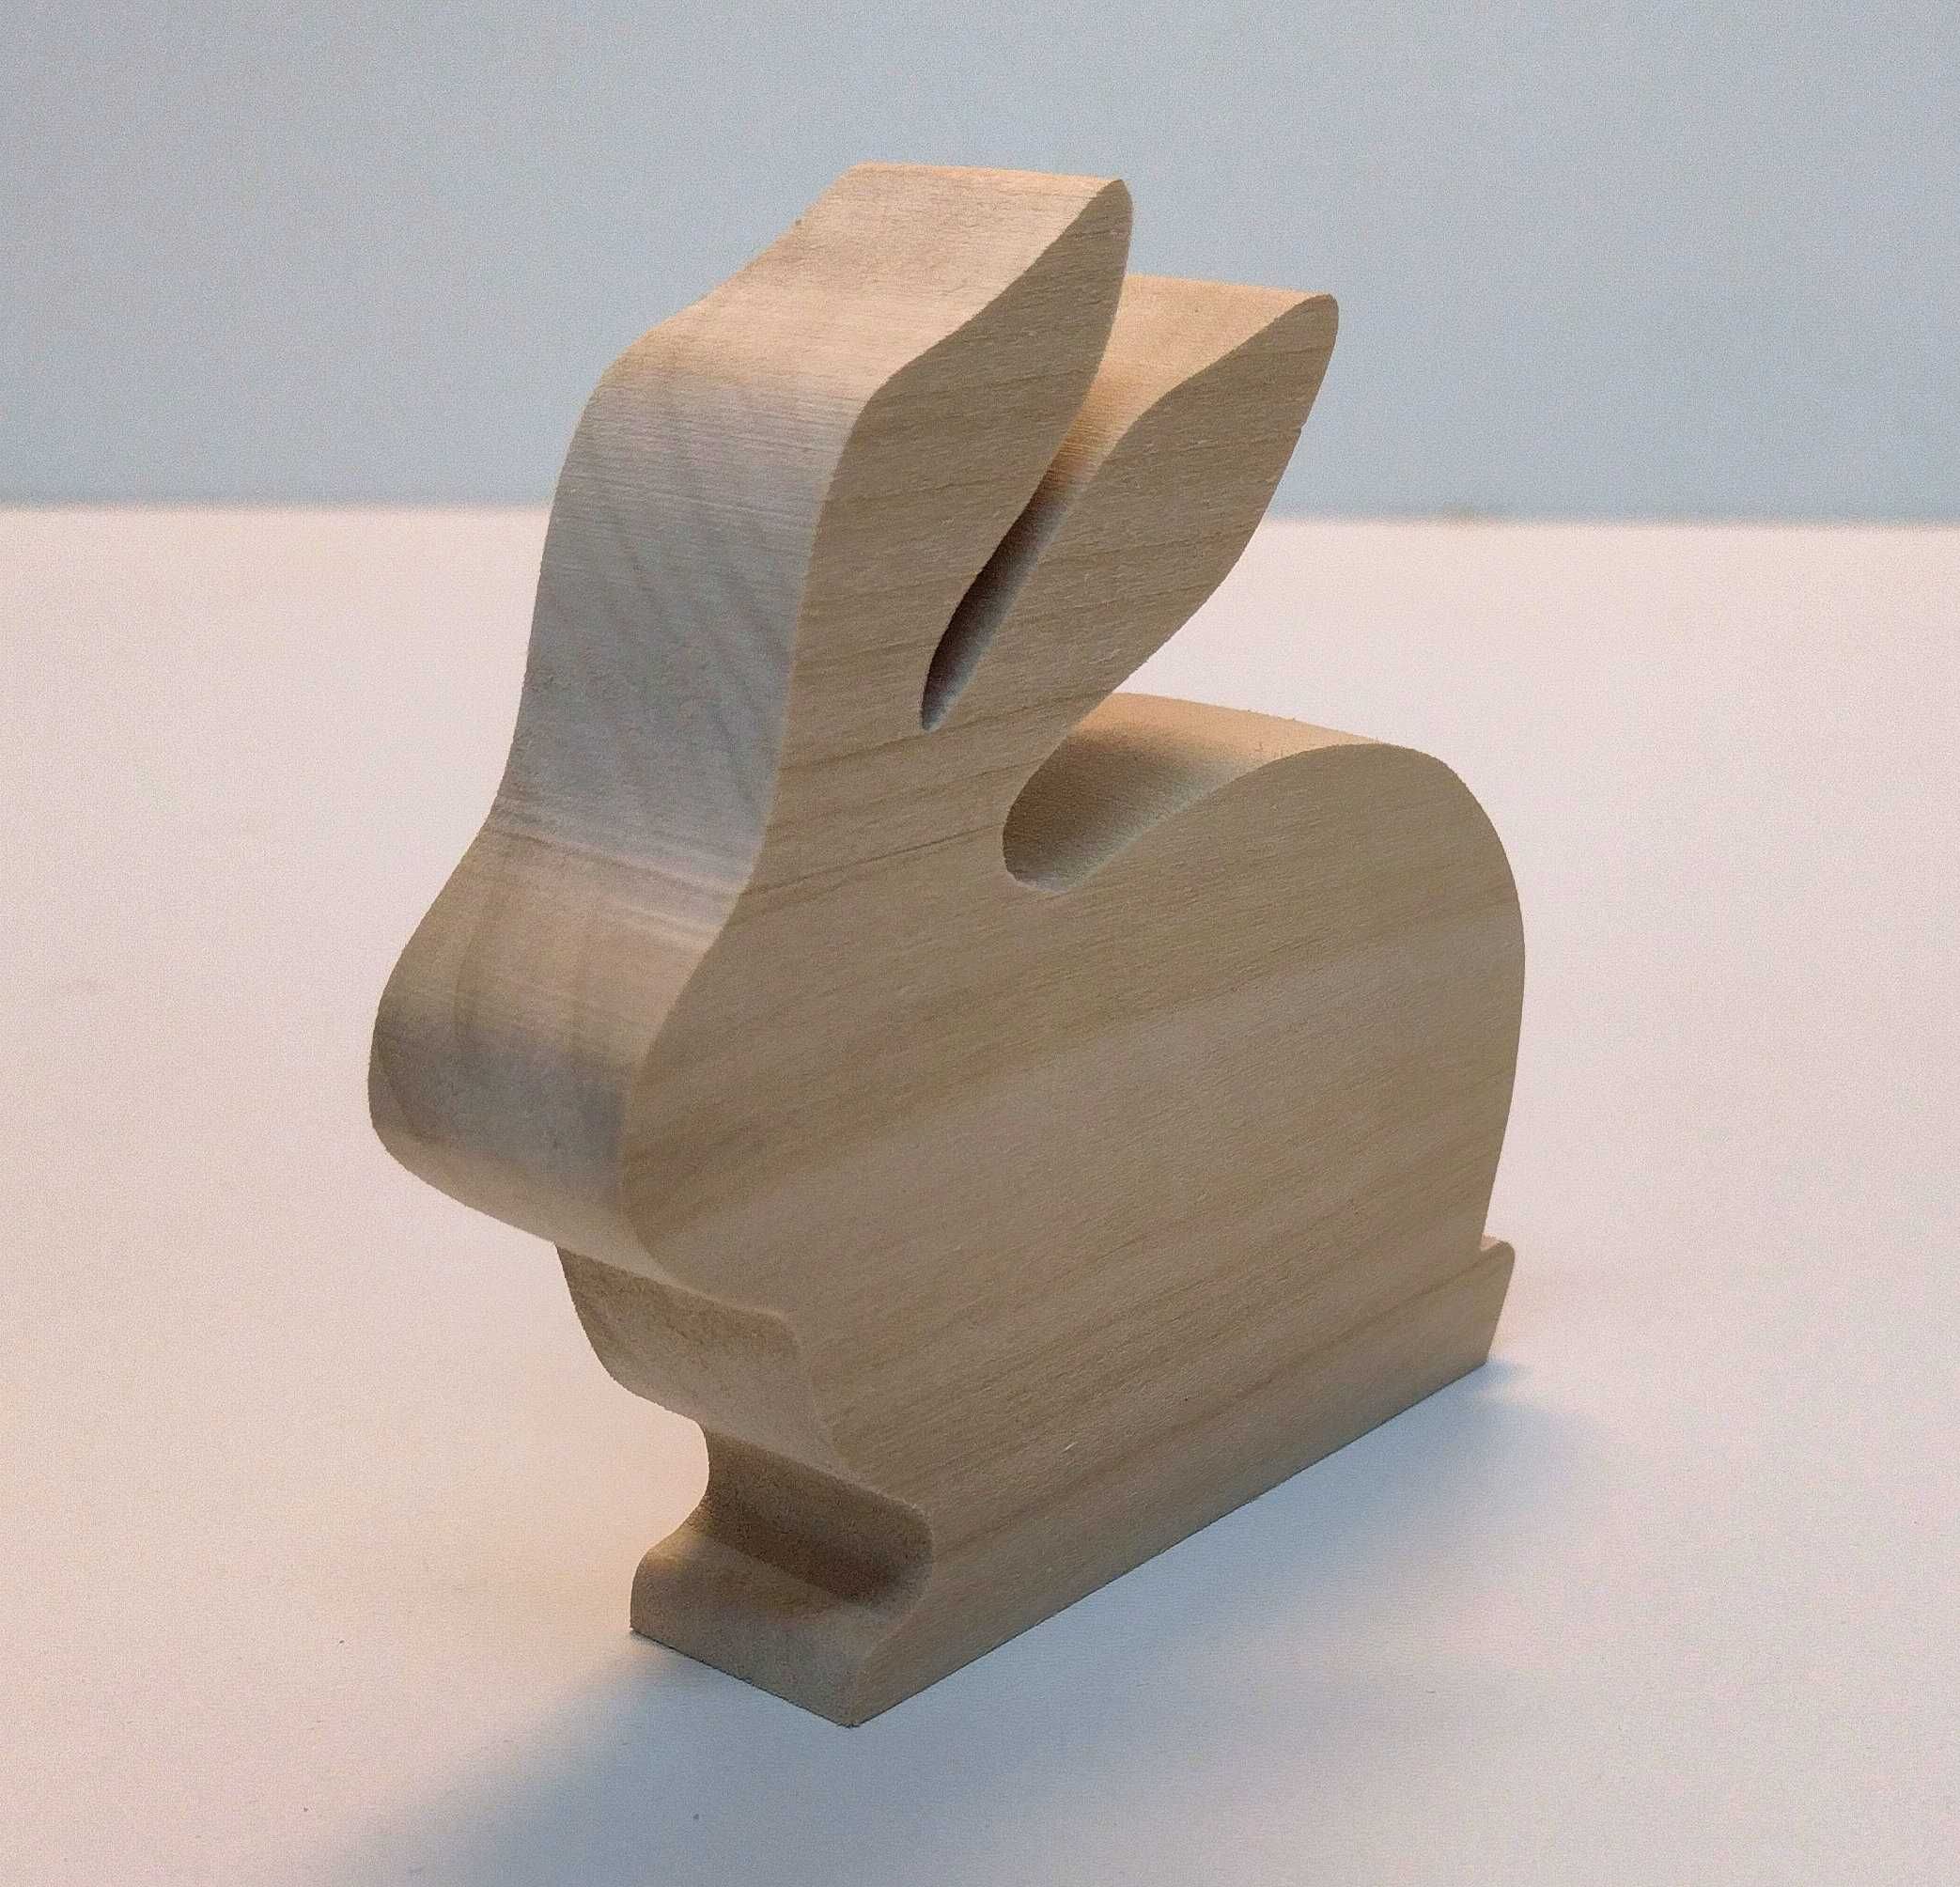 ZAJĄC WIELKANOCNY figurka drewniana królik 3D 10cm